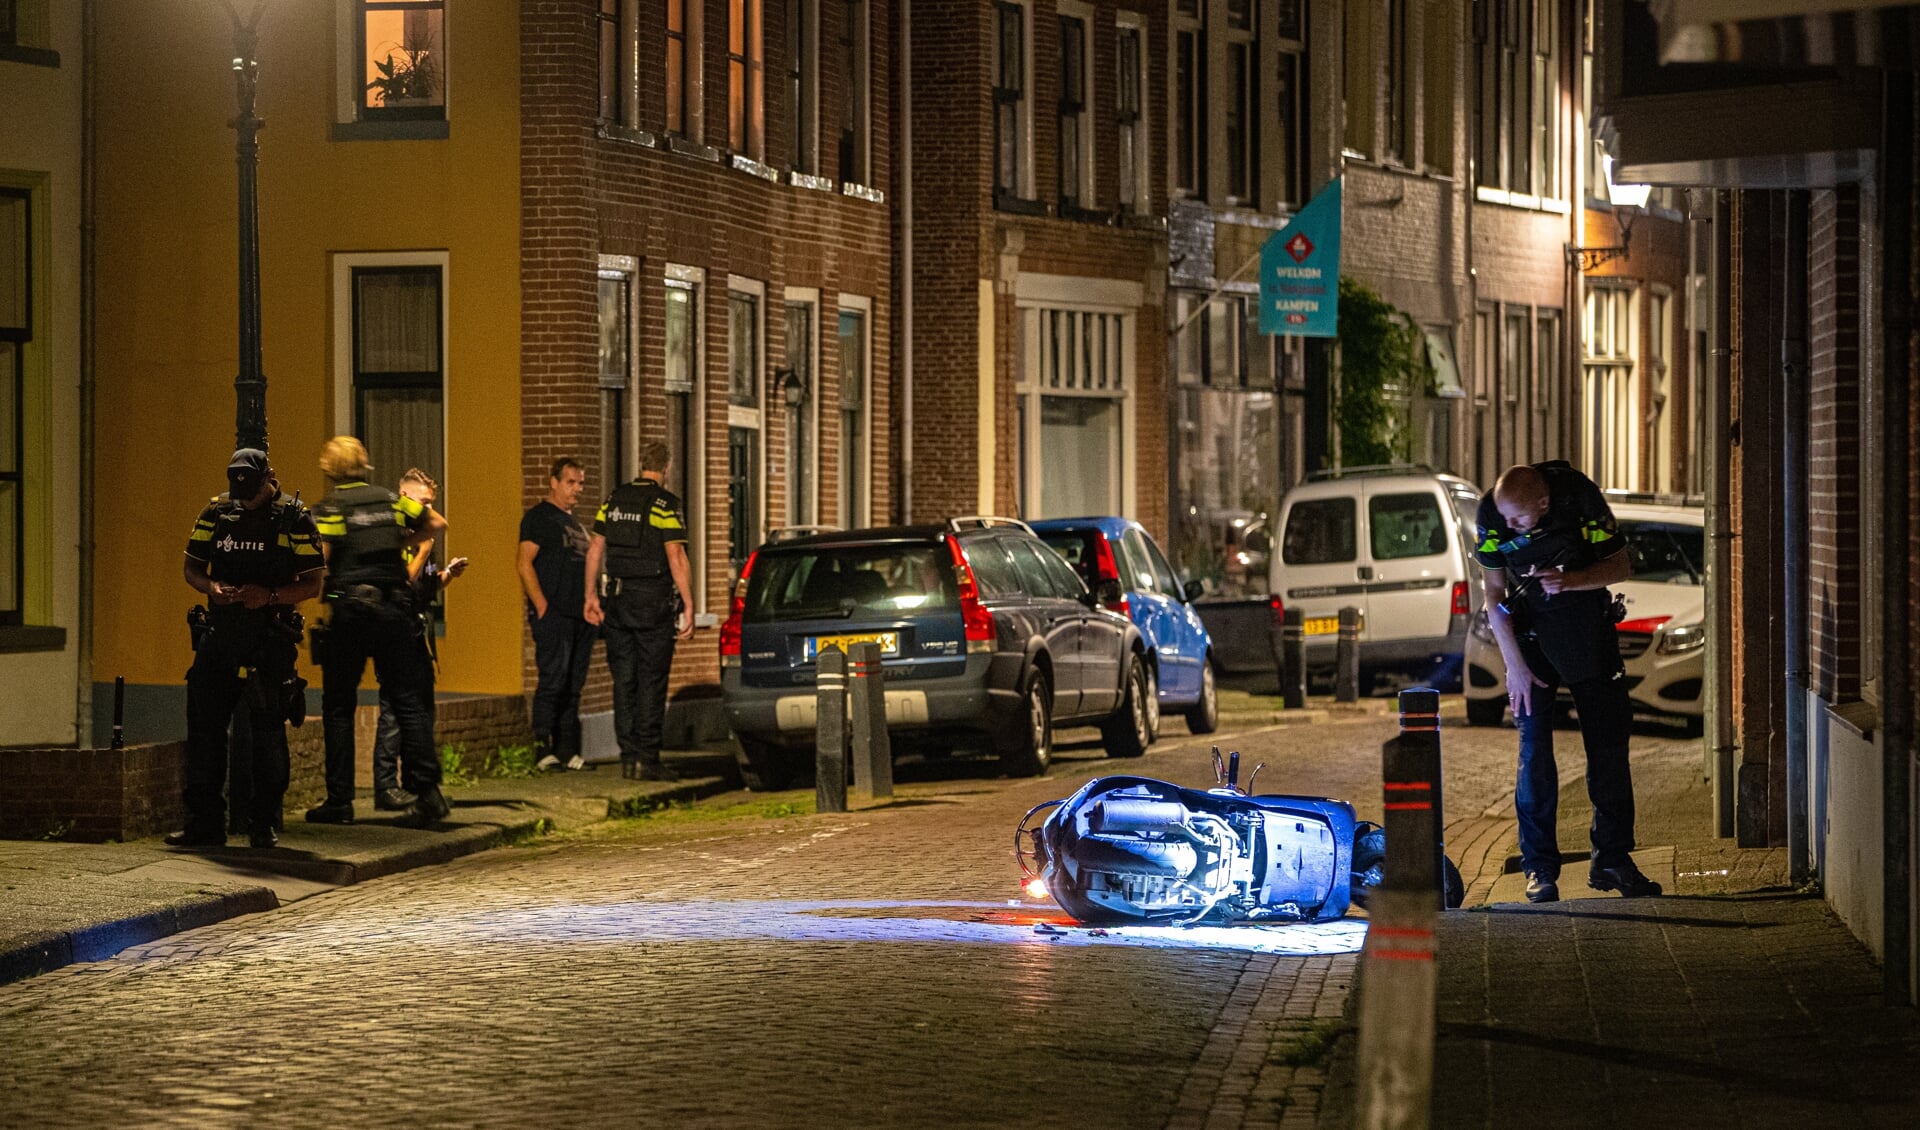 Het schietincident uit september gebeurde volgens burgemeester Bort Koelewijn bij toeval in de Boven Nieuwstraat.